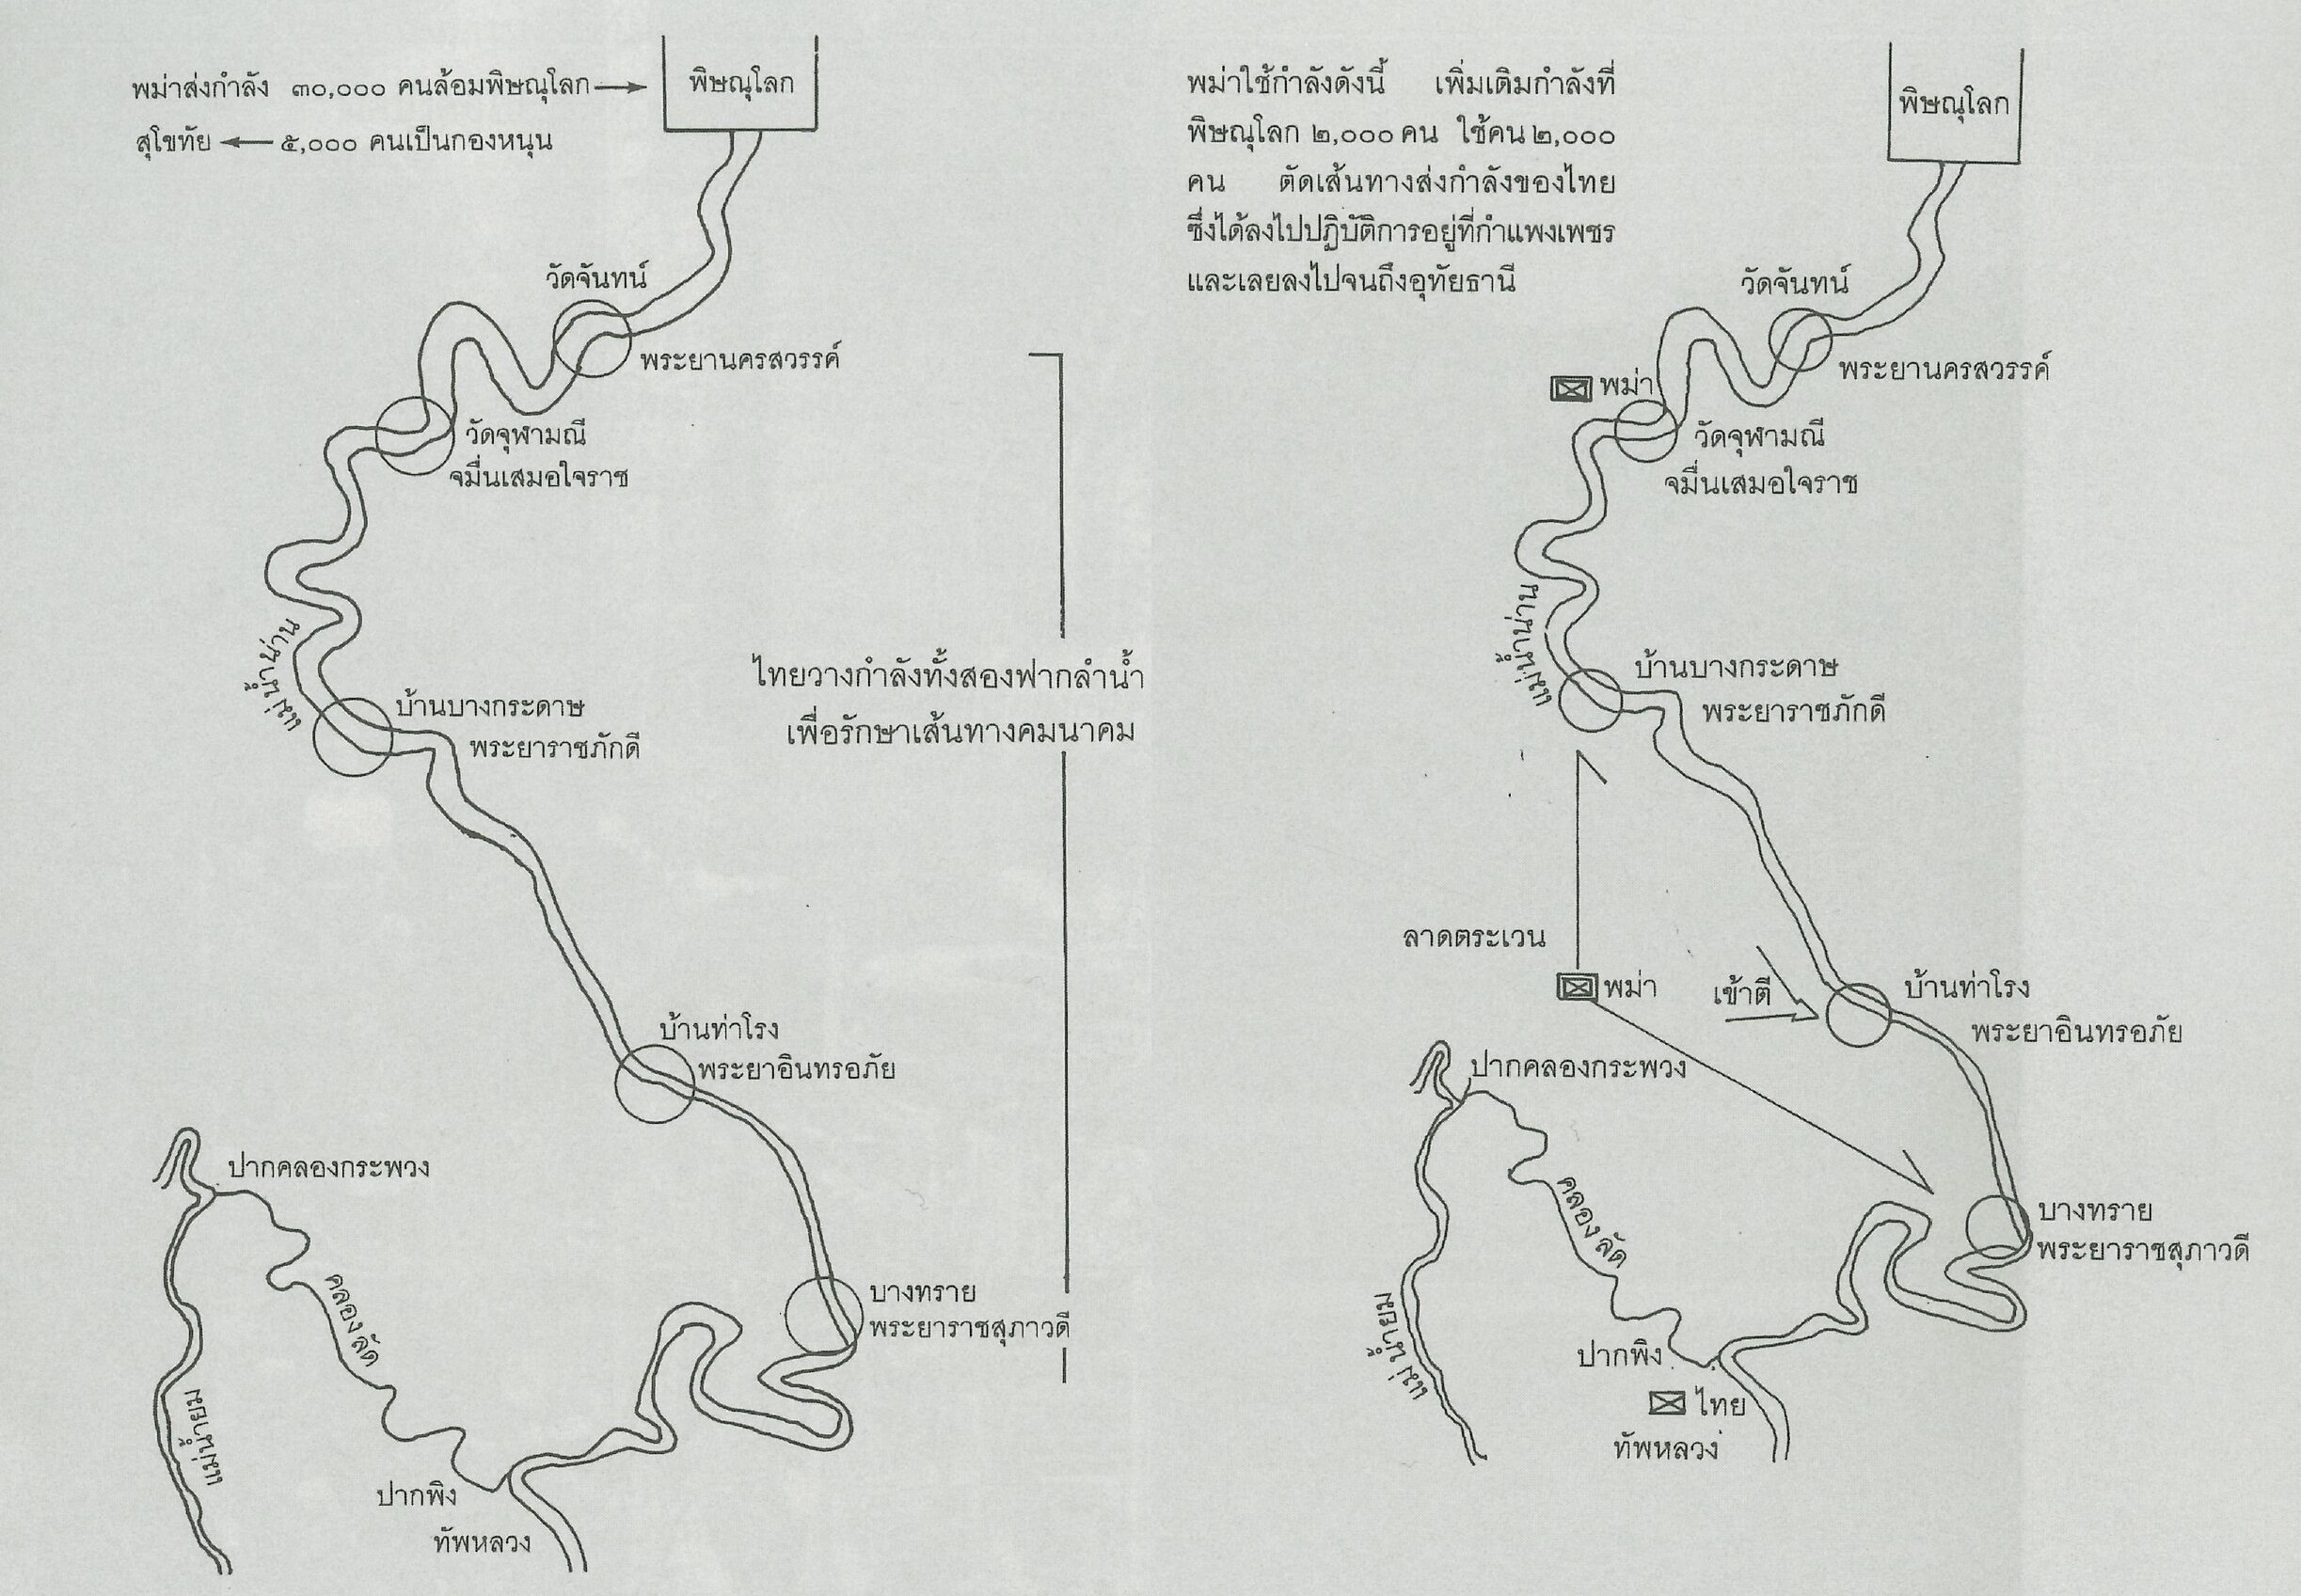 แผนที่ การตั้งค่าย และ กองกำลัง ของ ฝ่ายไทย และ พม่า ใน สมรภูมิปากพิง